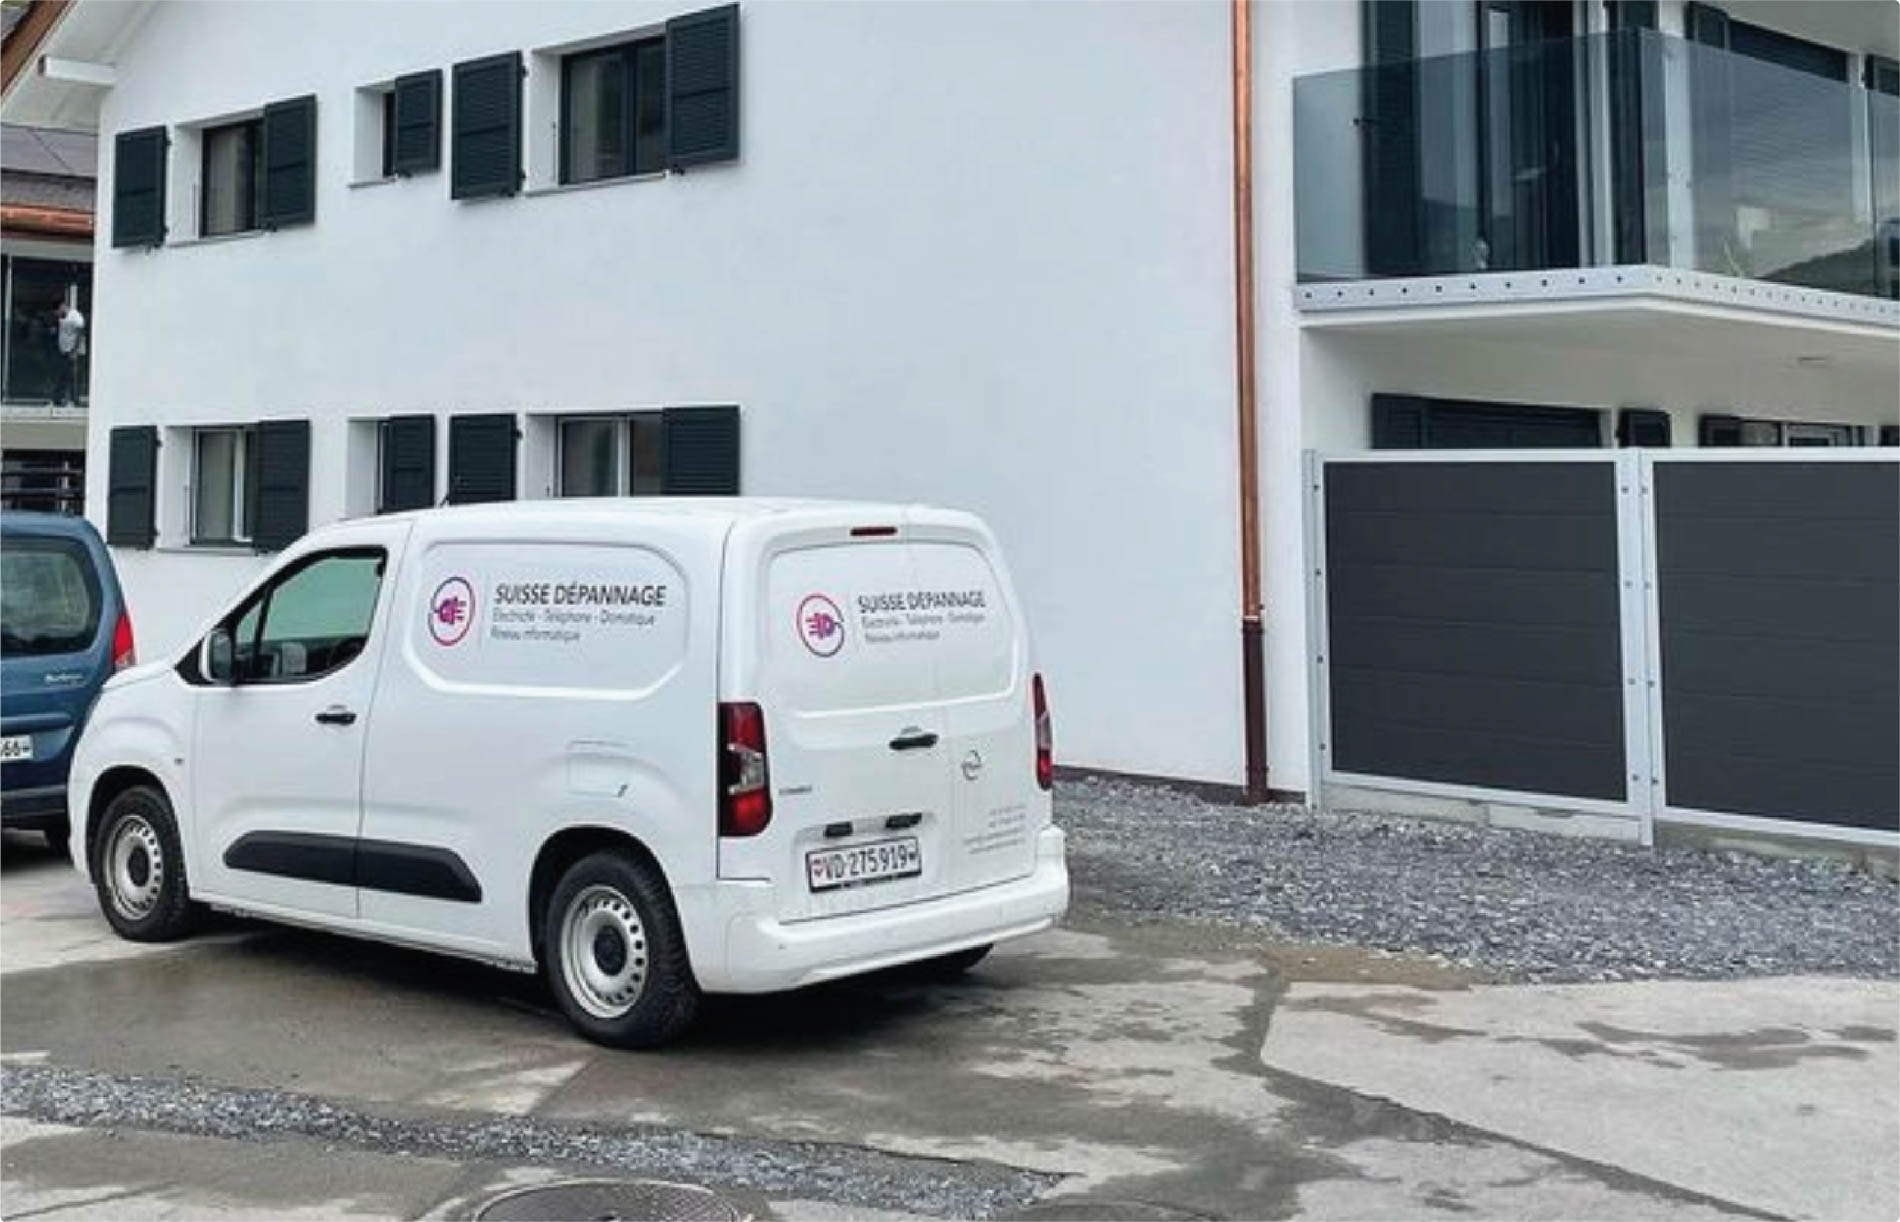 Suisse depannage-contact-electricité-accueil-camionnette